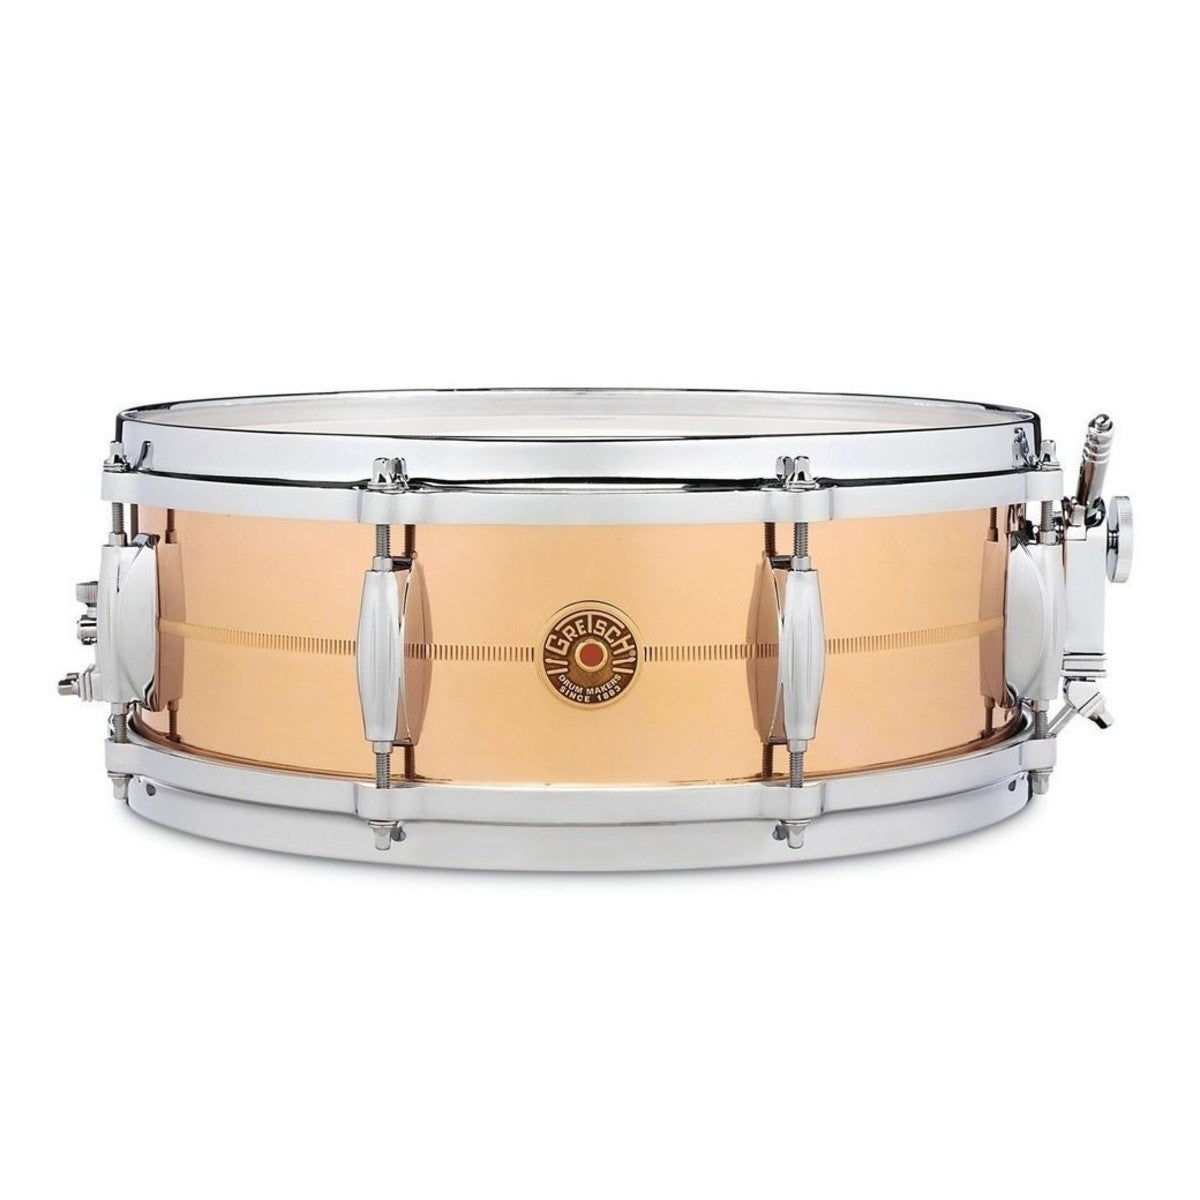 Gretsch USA Bronze 14" x 5" Snare Drum